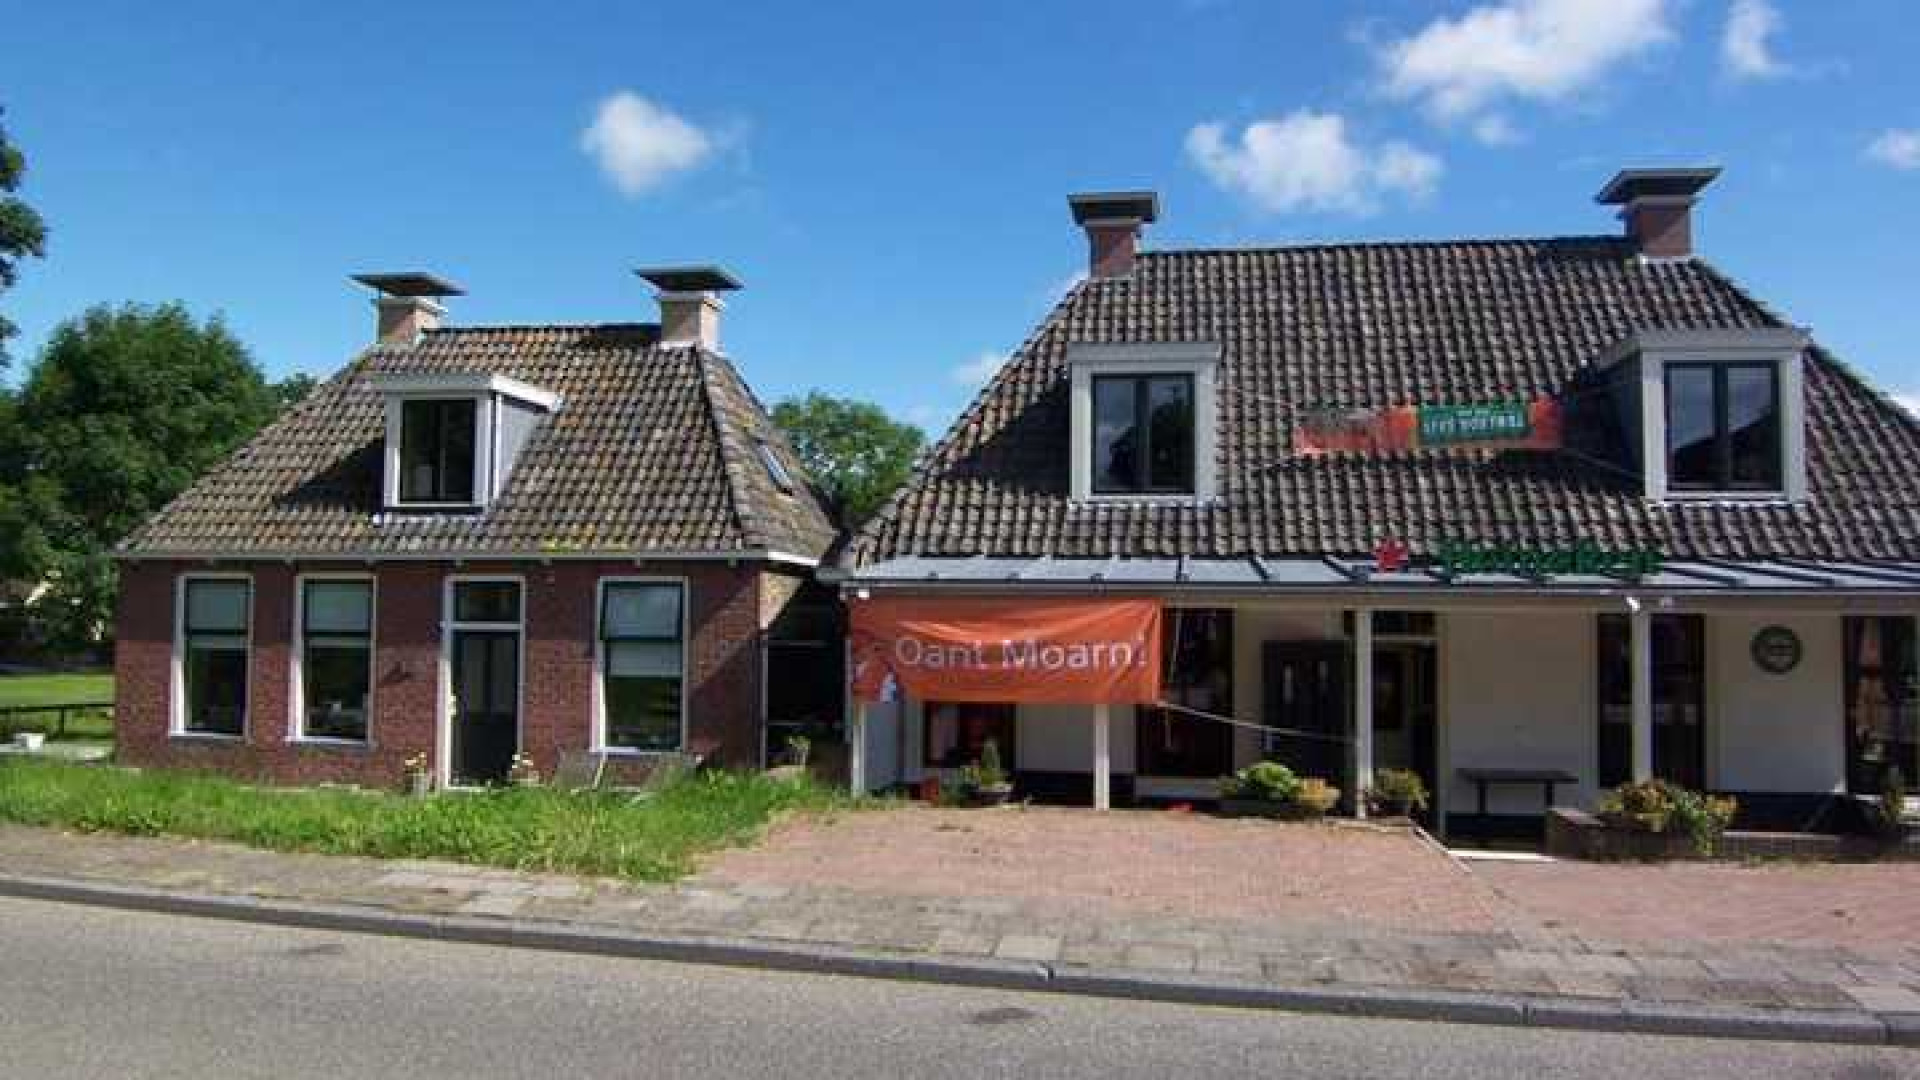 Huis Piet Paulusma eindelijk na meer dan drie jaar verkocht. Zie foto's 3